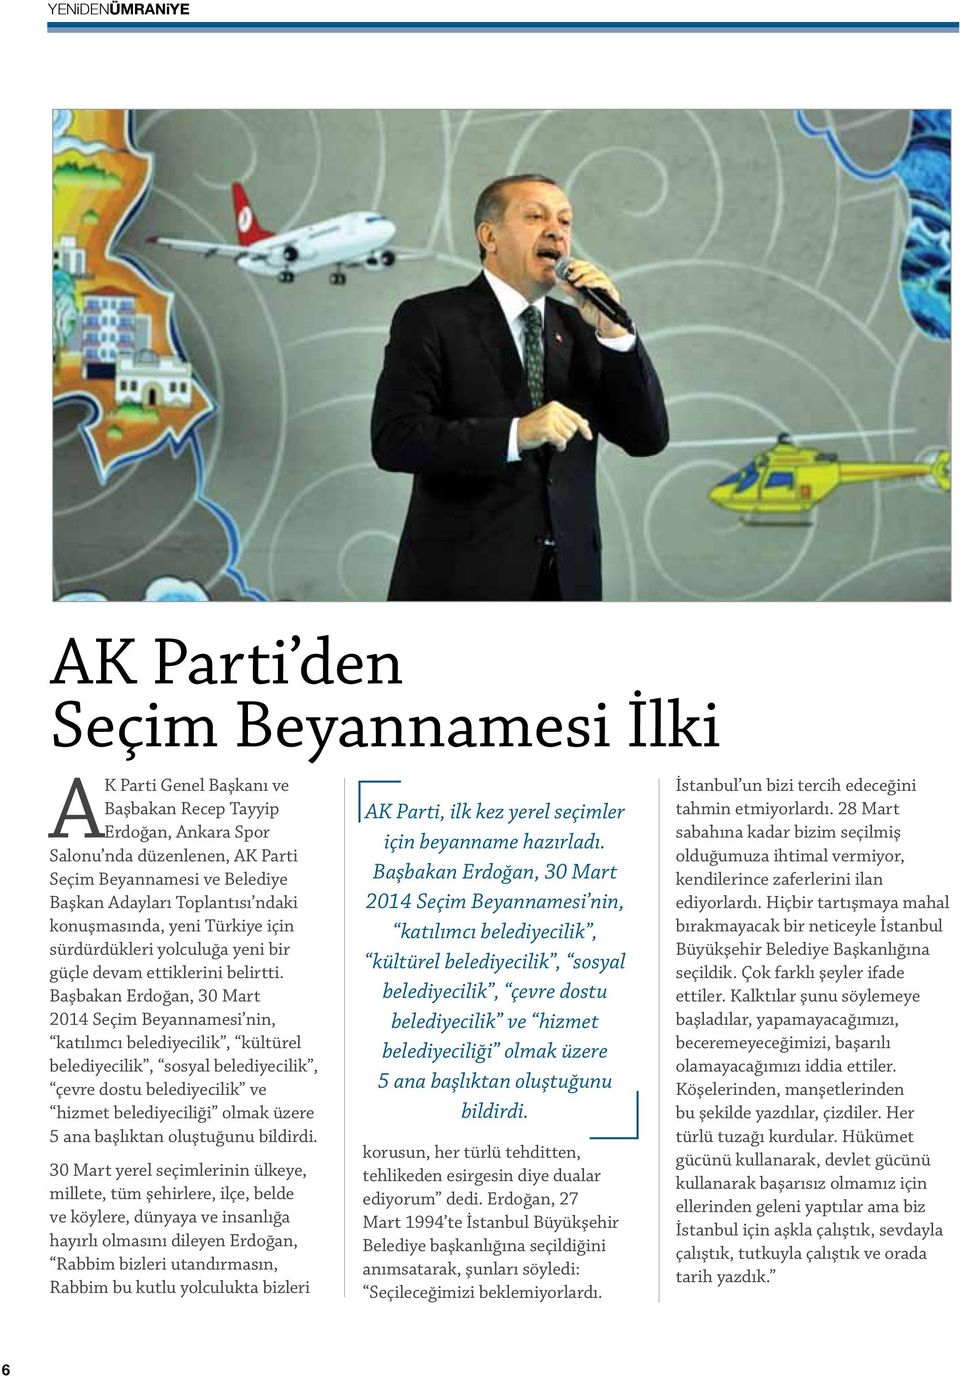 Başbakan Erdoğan, 30 Mart 2014 Seçim Beyannamesi nin, katılımcı belediyecilik, kültürel belediyecilik, sosyal belediyecilik, çevre dostu belediyecilik ve hizmet belediyeciliği olmak üzere 5 ana